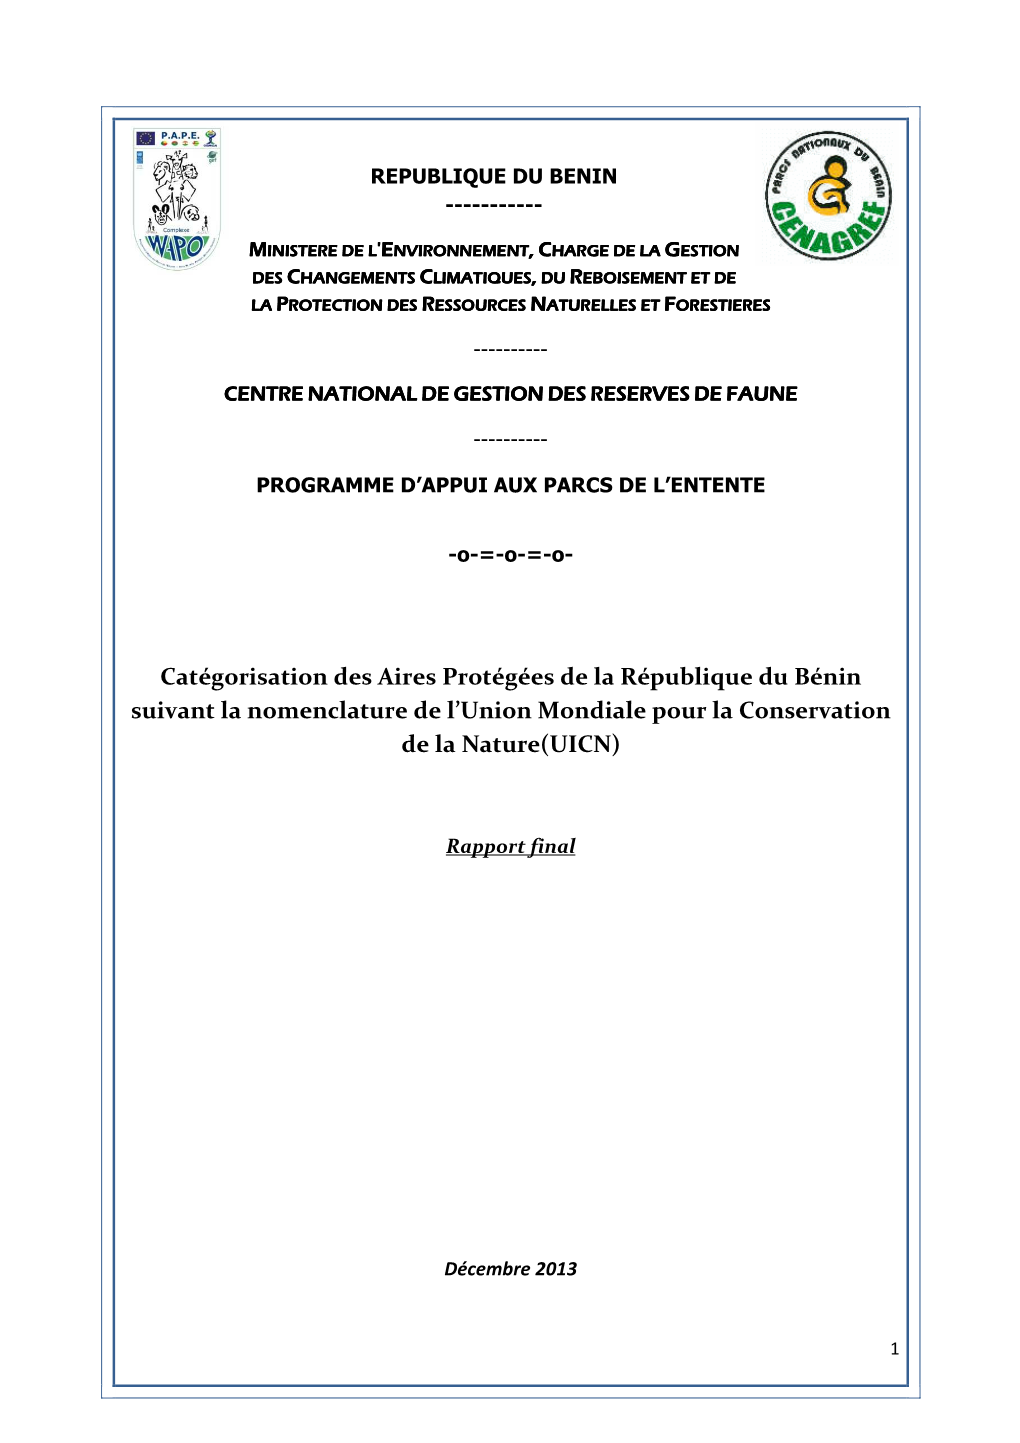 Catégorisation Des Aires Protégées De La République Du Bénin Suivant La Nomenclature De L’Union Mondiale Pour La Conservation De La Nature(UICN)